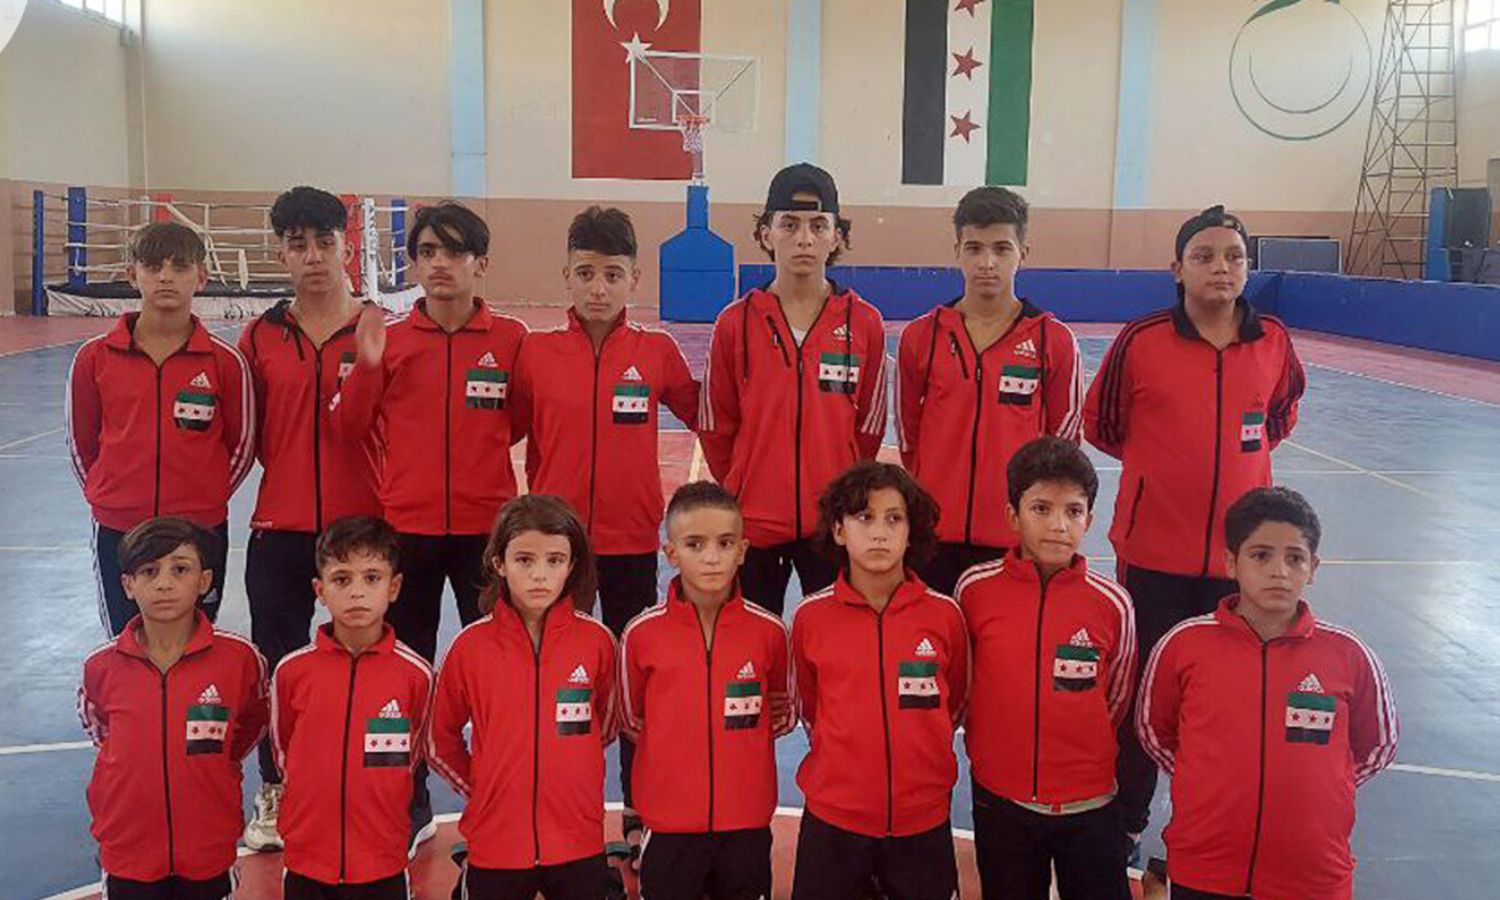 منتخب أشبال إدلب لرياضة الجودو قبيل انطلاقهم إلى تركيا للمشاركة ببطولة "سكاريا" الدولية- 17 من آب 2023 (مديرية الرياضة والشباب)